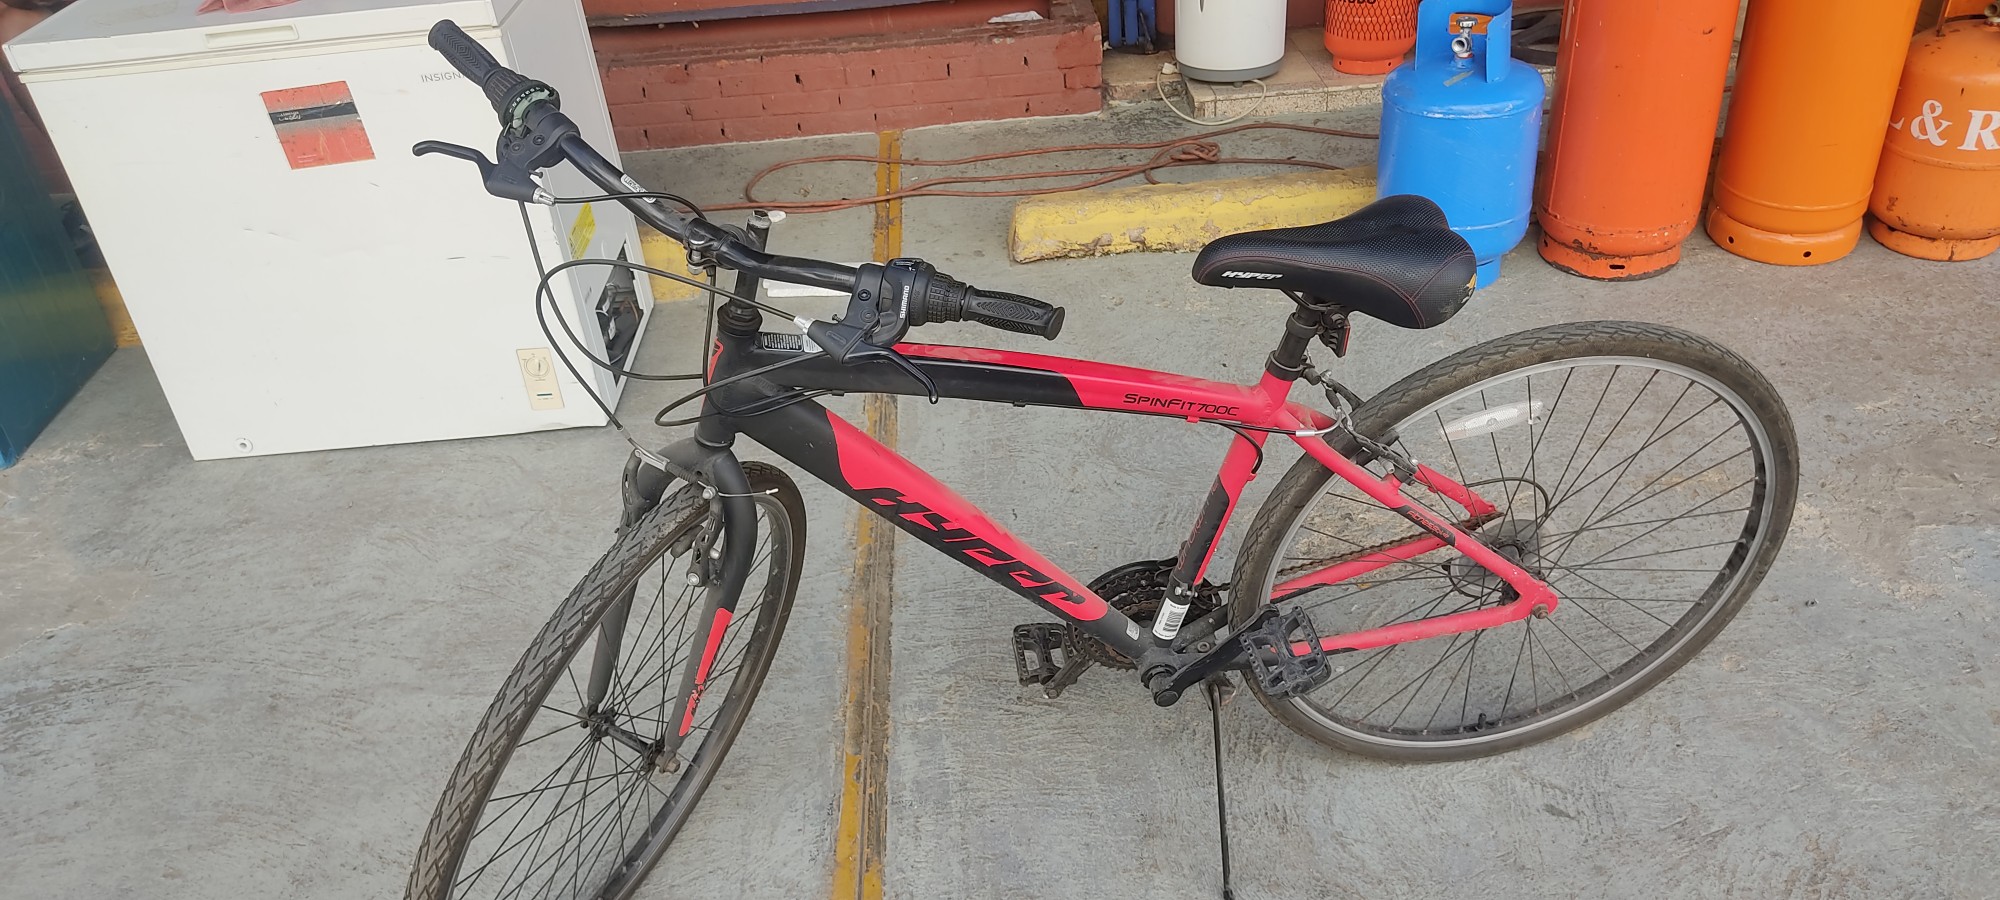 bicicletas y accesorios - Bicicleta roja buena condicion